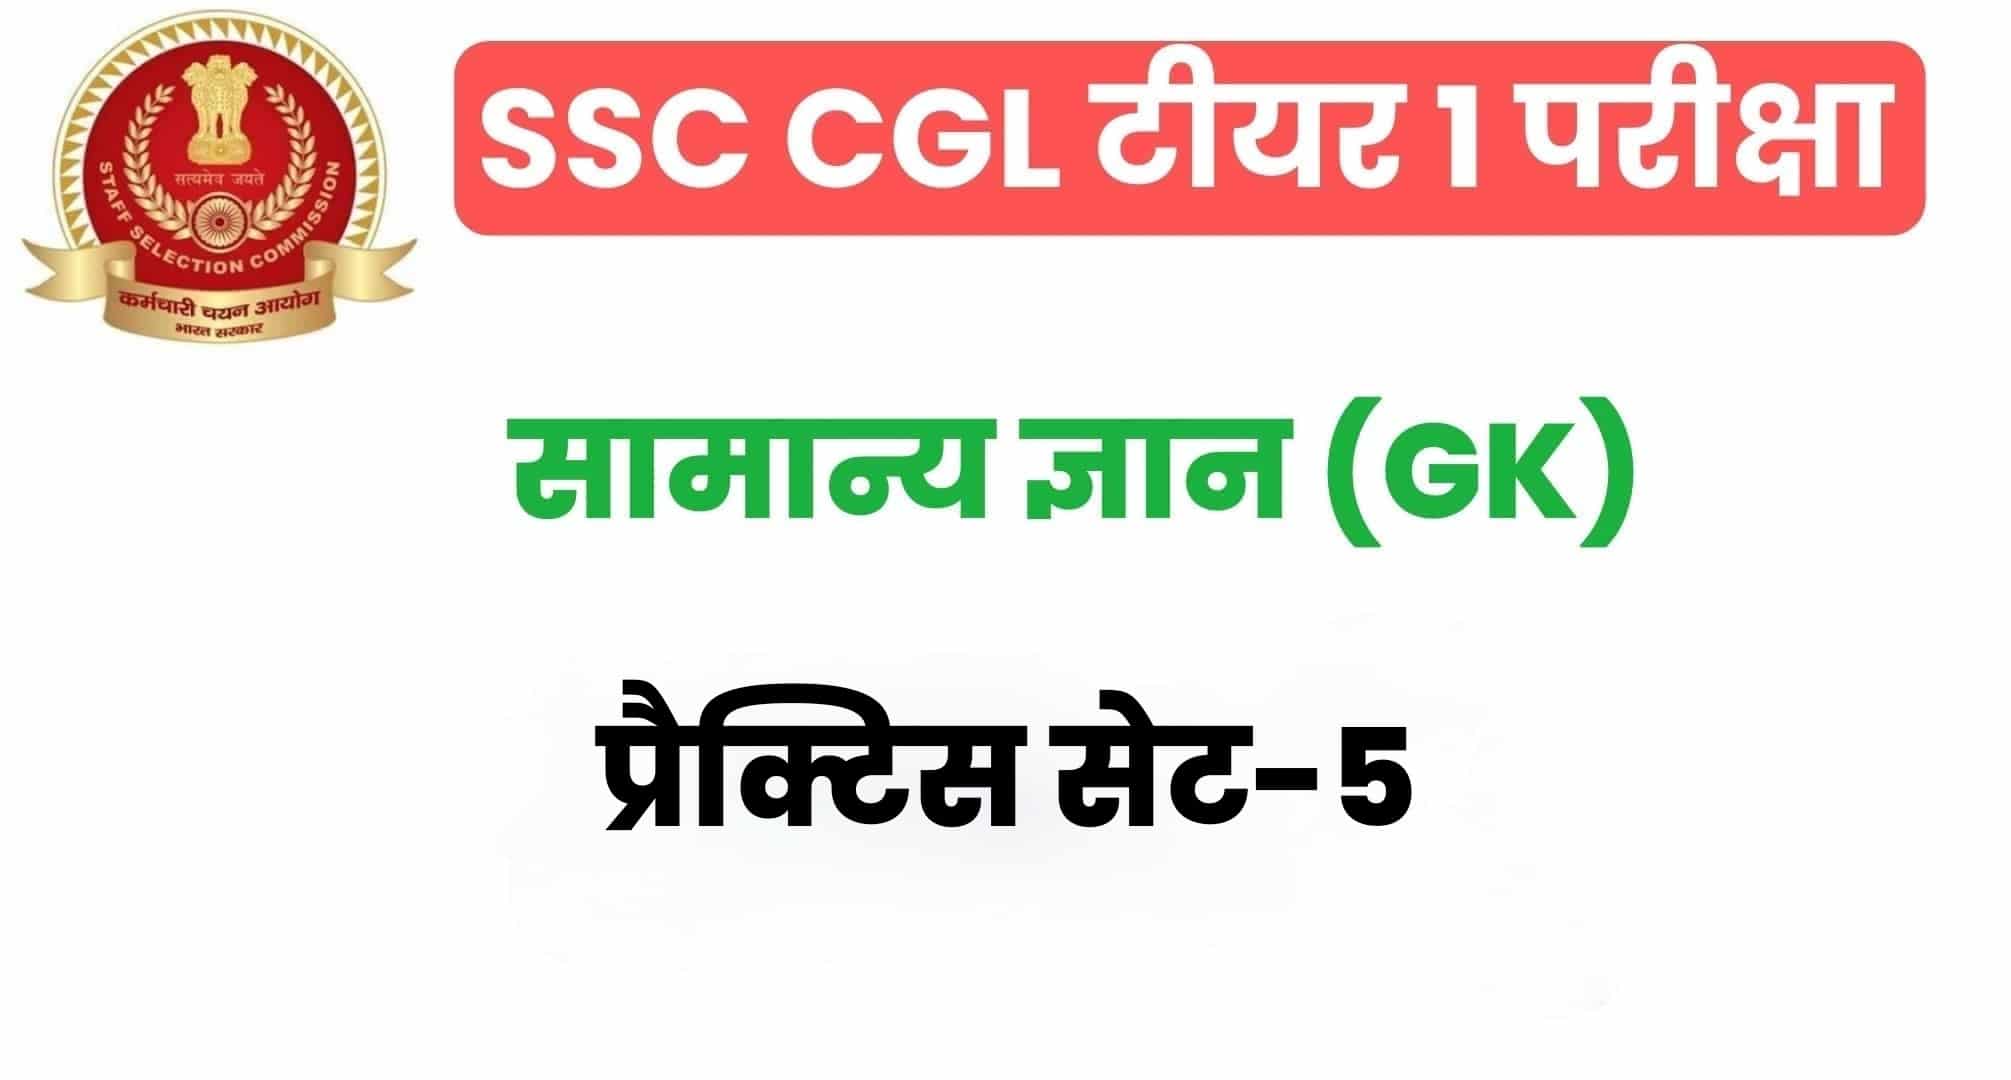 SSC CGL GK/GS प्रैक्टिस सेट 5 :  सामान्य ज्ञान के 25 अतिमहत्वपूर्ण प्रश्न, परीक्षा से पहले अध्ययन करें